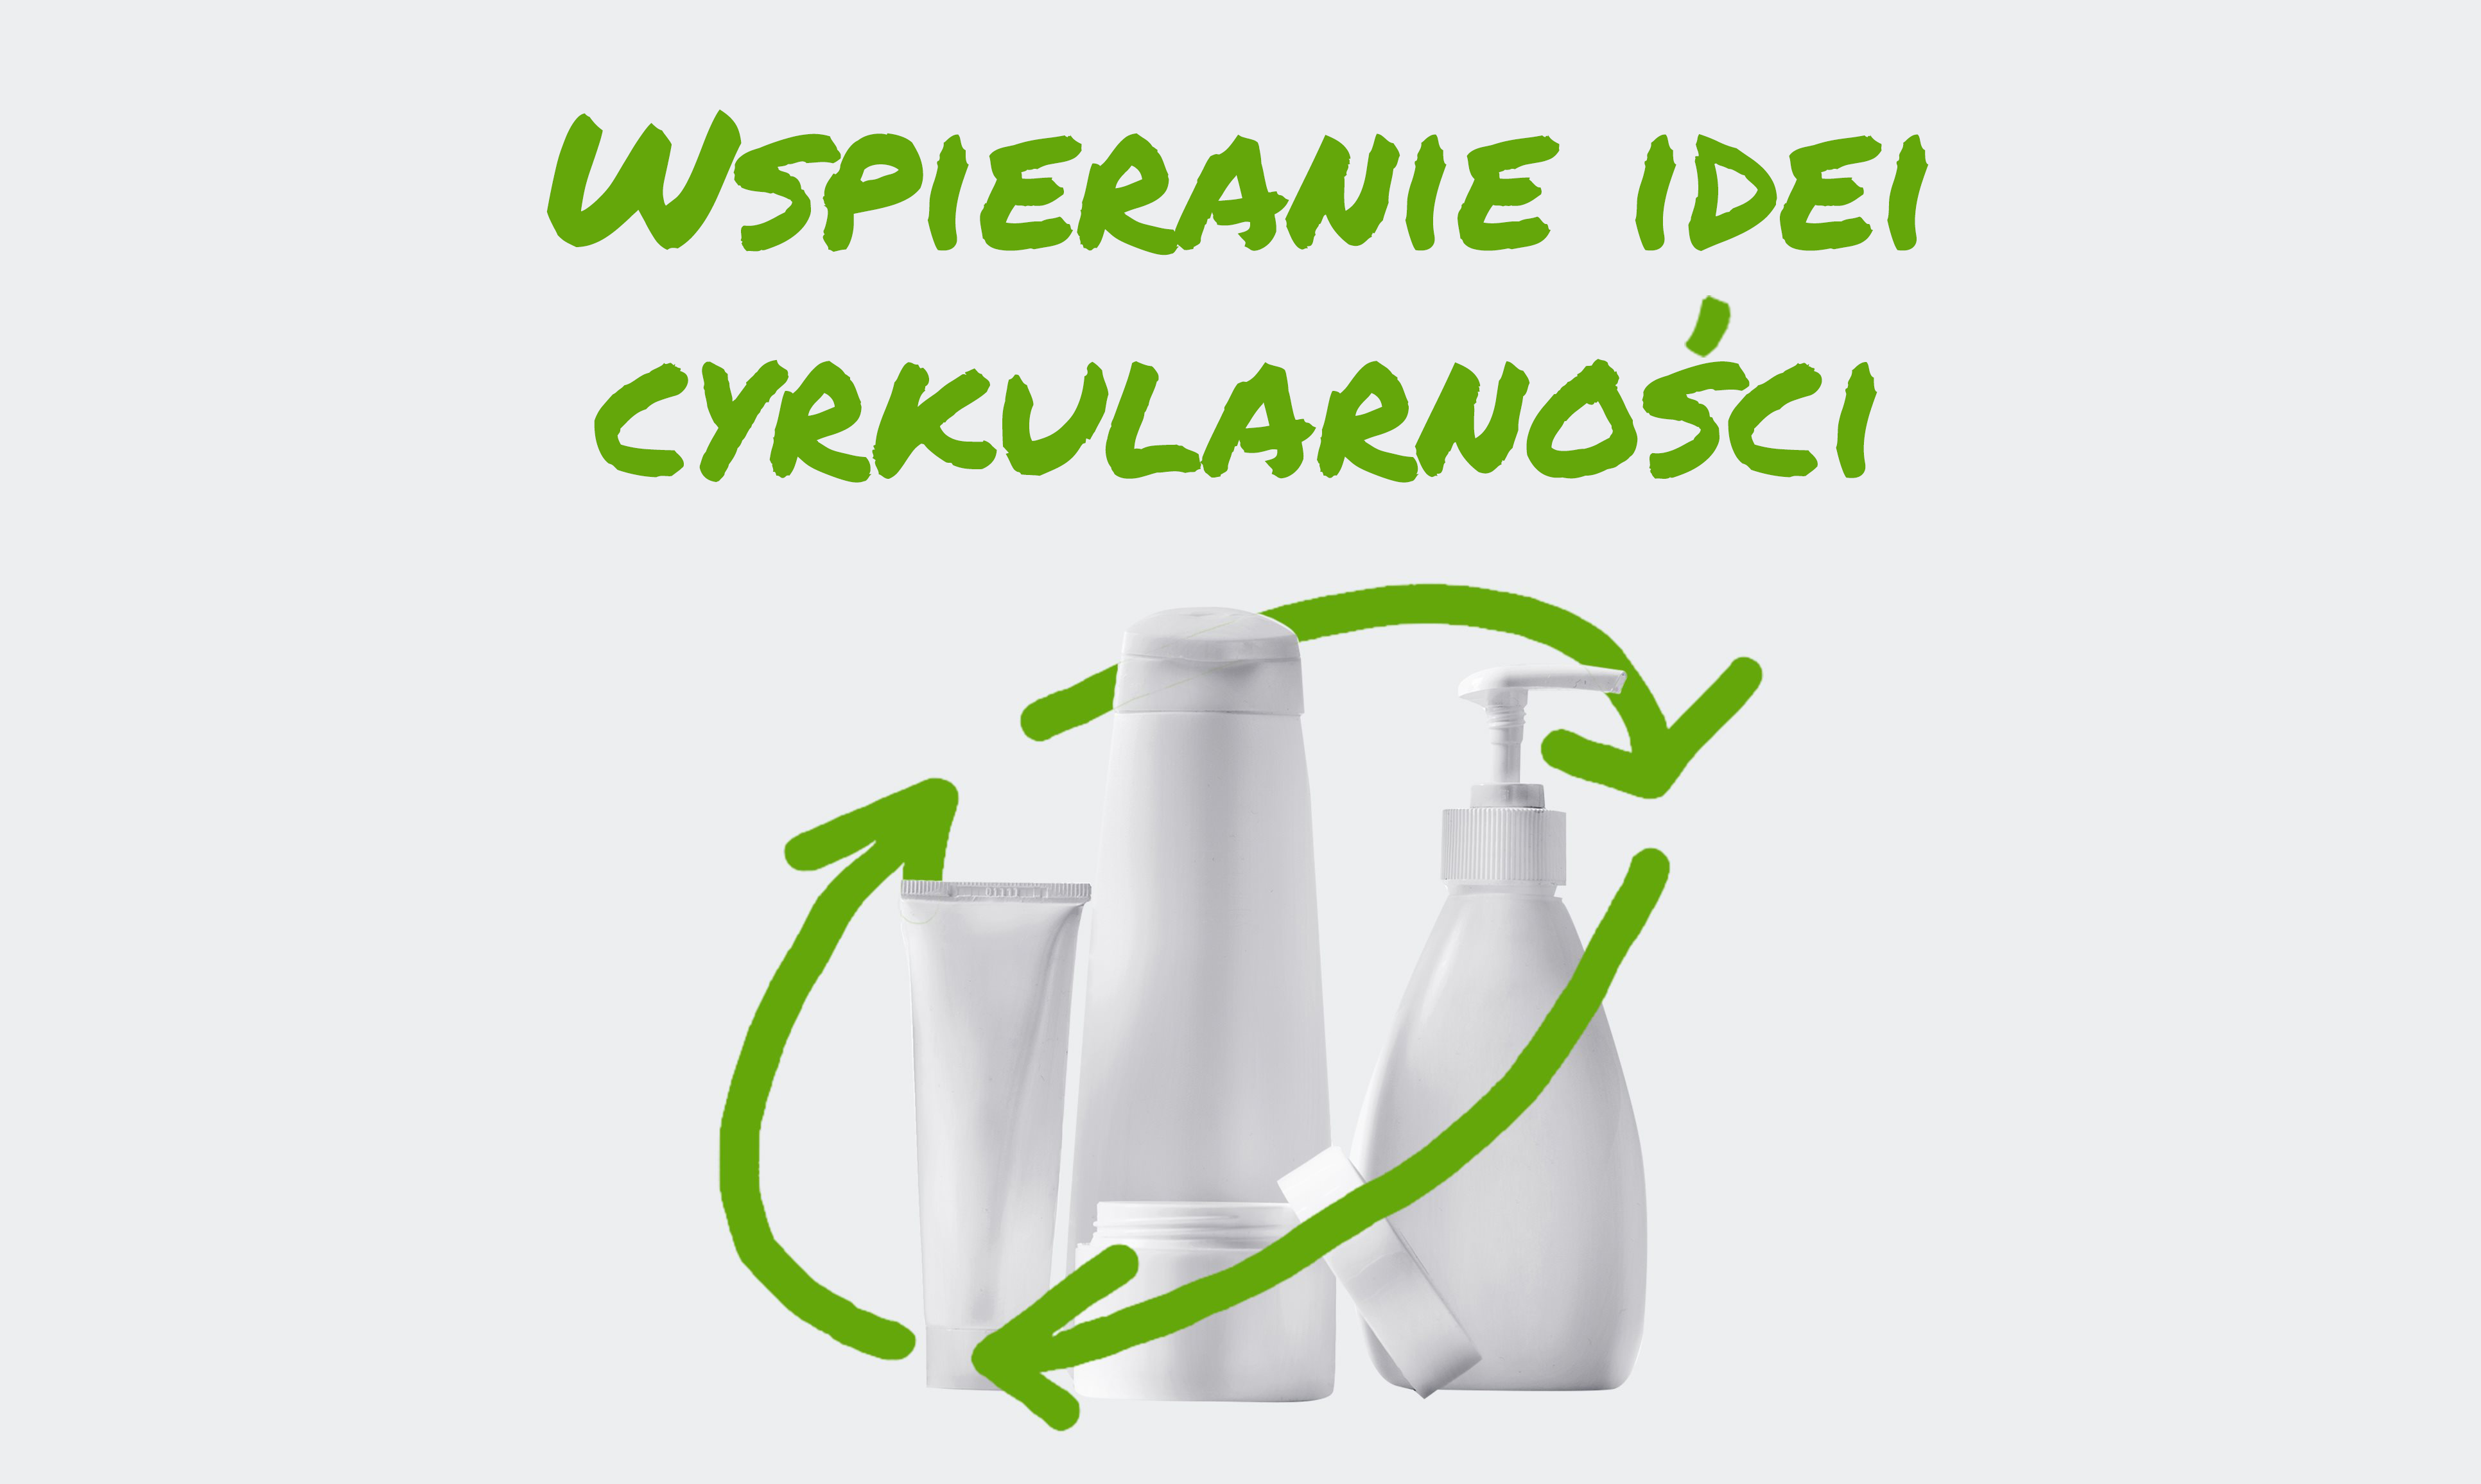 Trzy butelki z balsamem otoczone stylizowanym symbolem recyklingu